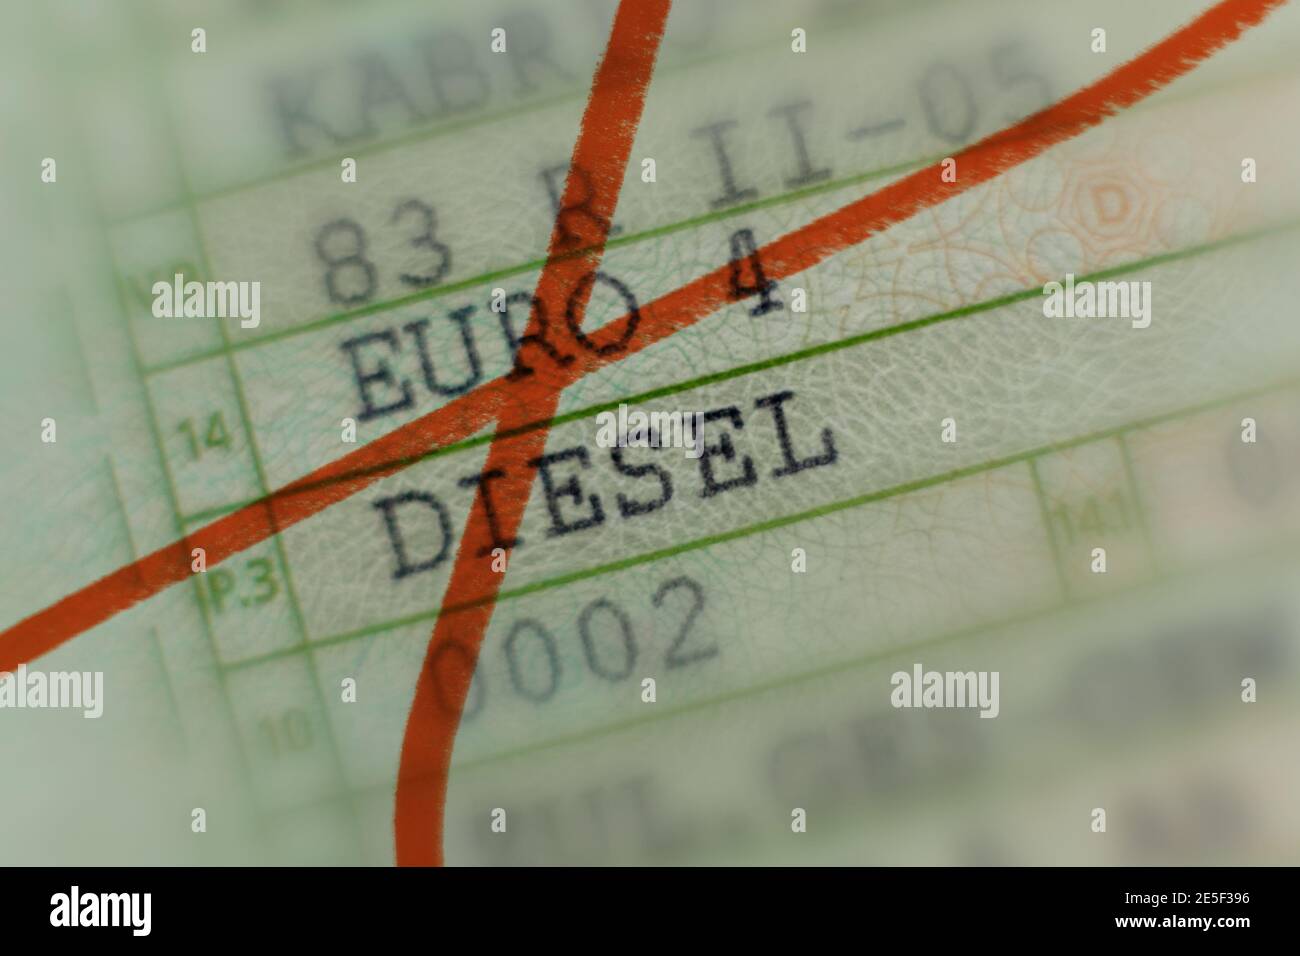 Licencia de automóvil con marcador rojo tachado, coche sin valor por el escándalo del diesel, coches de pasajeros, diesel Euro 4, la conducción se prohíbe en citi alemán Foto de stock